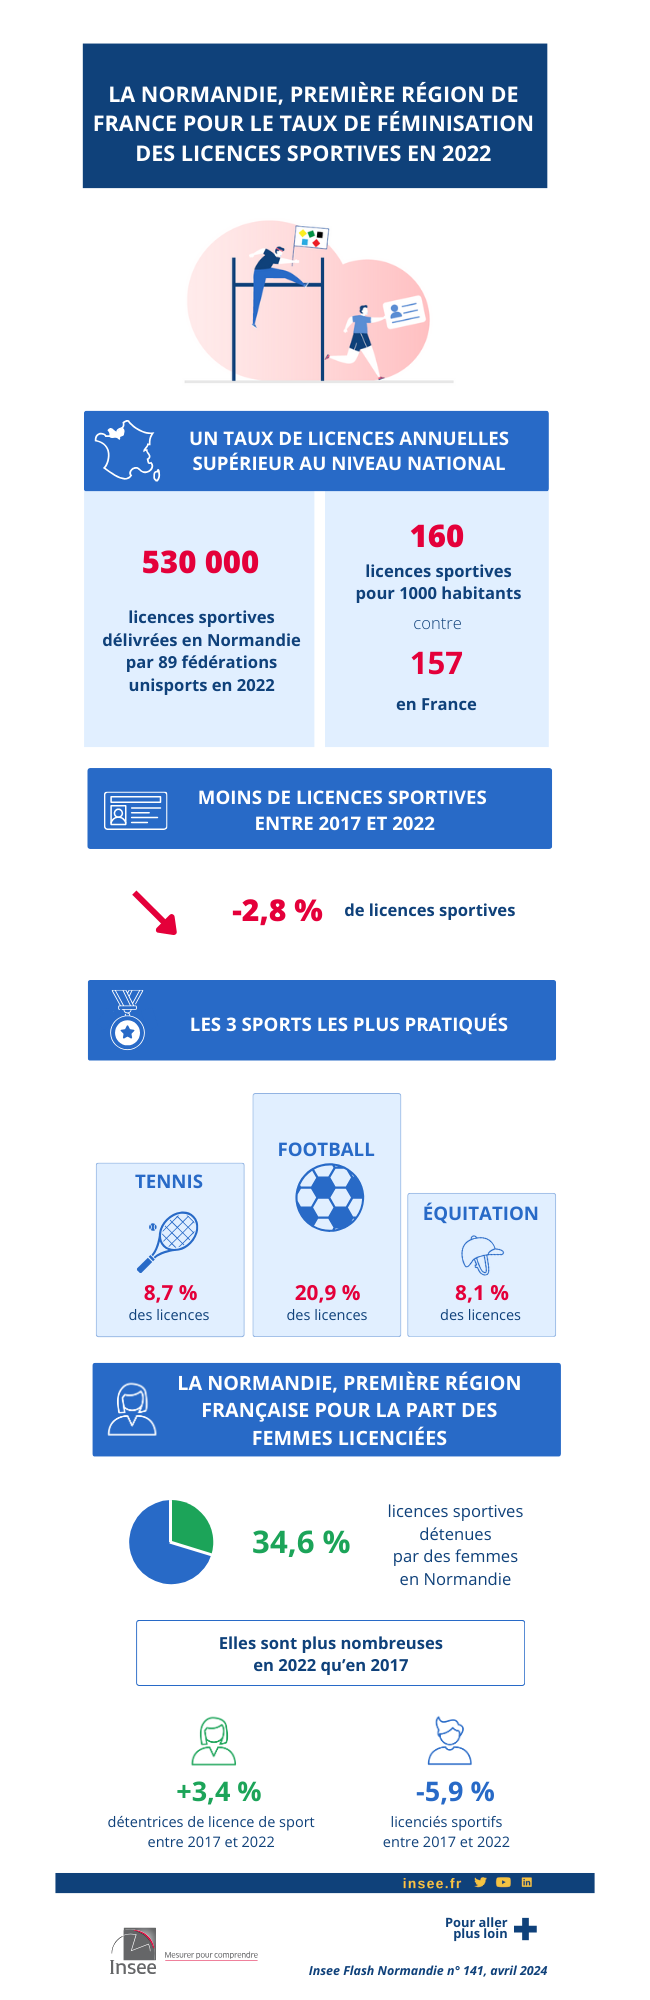 La Normandie, première région de France pour le taux de féminisation des licences sportives en 2022